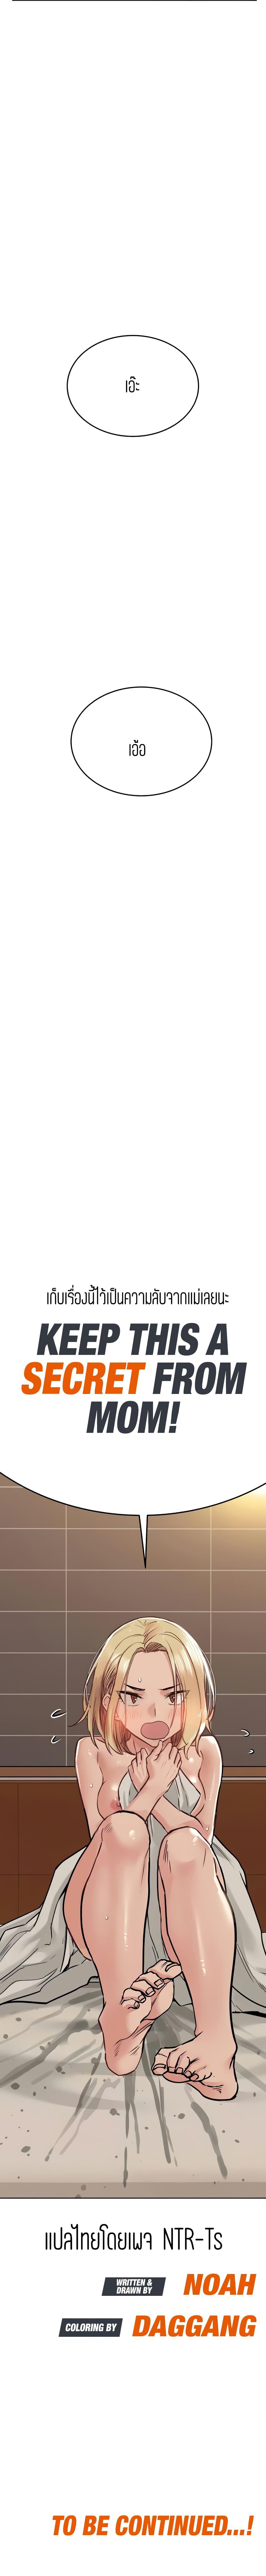 เก็บมันไว้เป็นความลับระหว่างแม่ของเธอนะ! 24 ภาพ 19